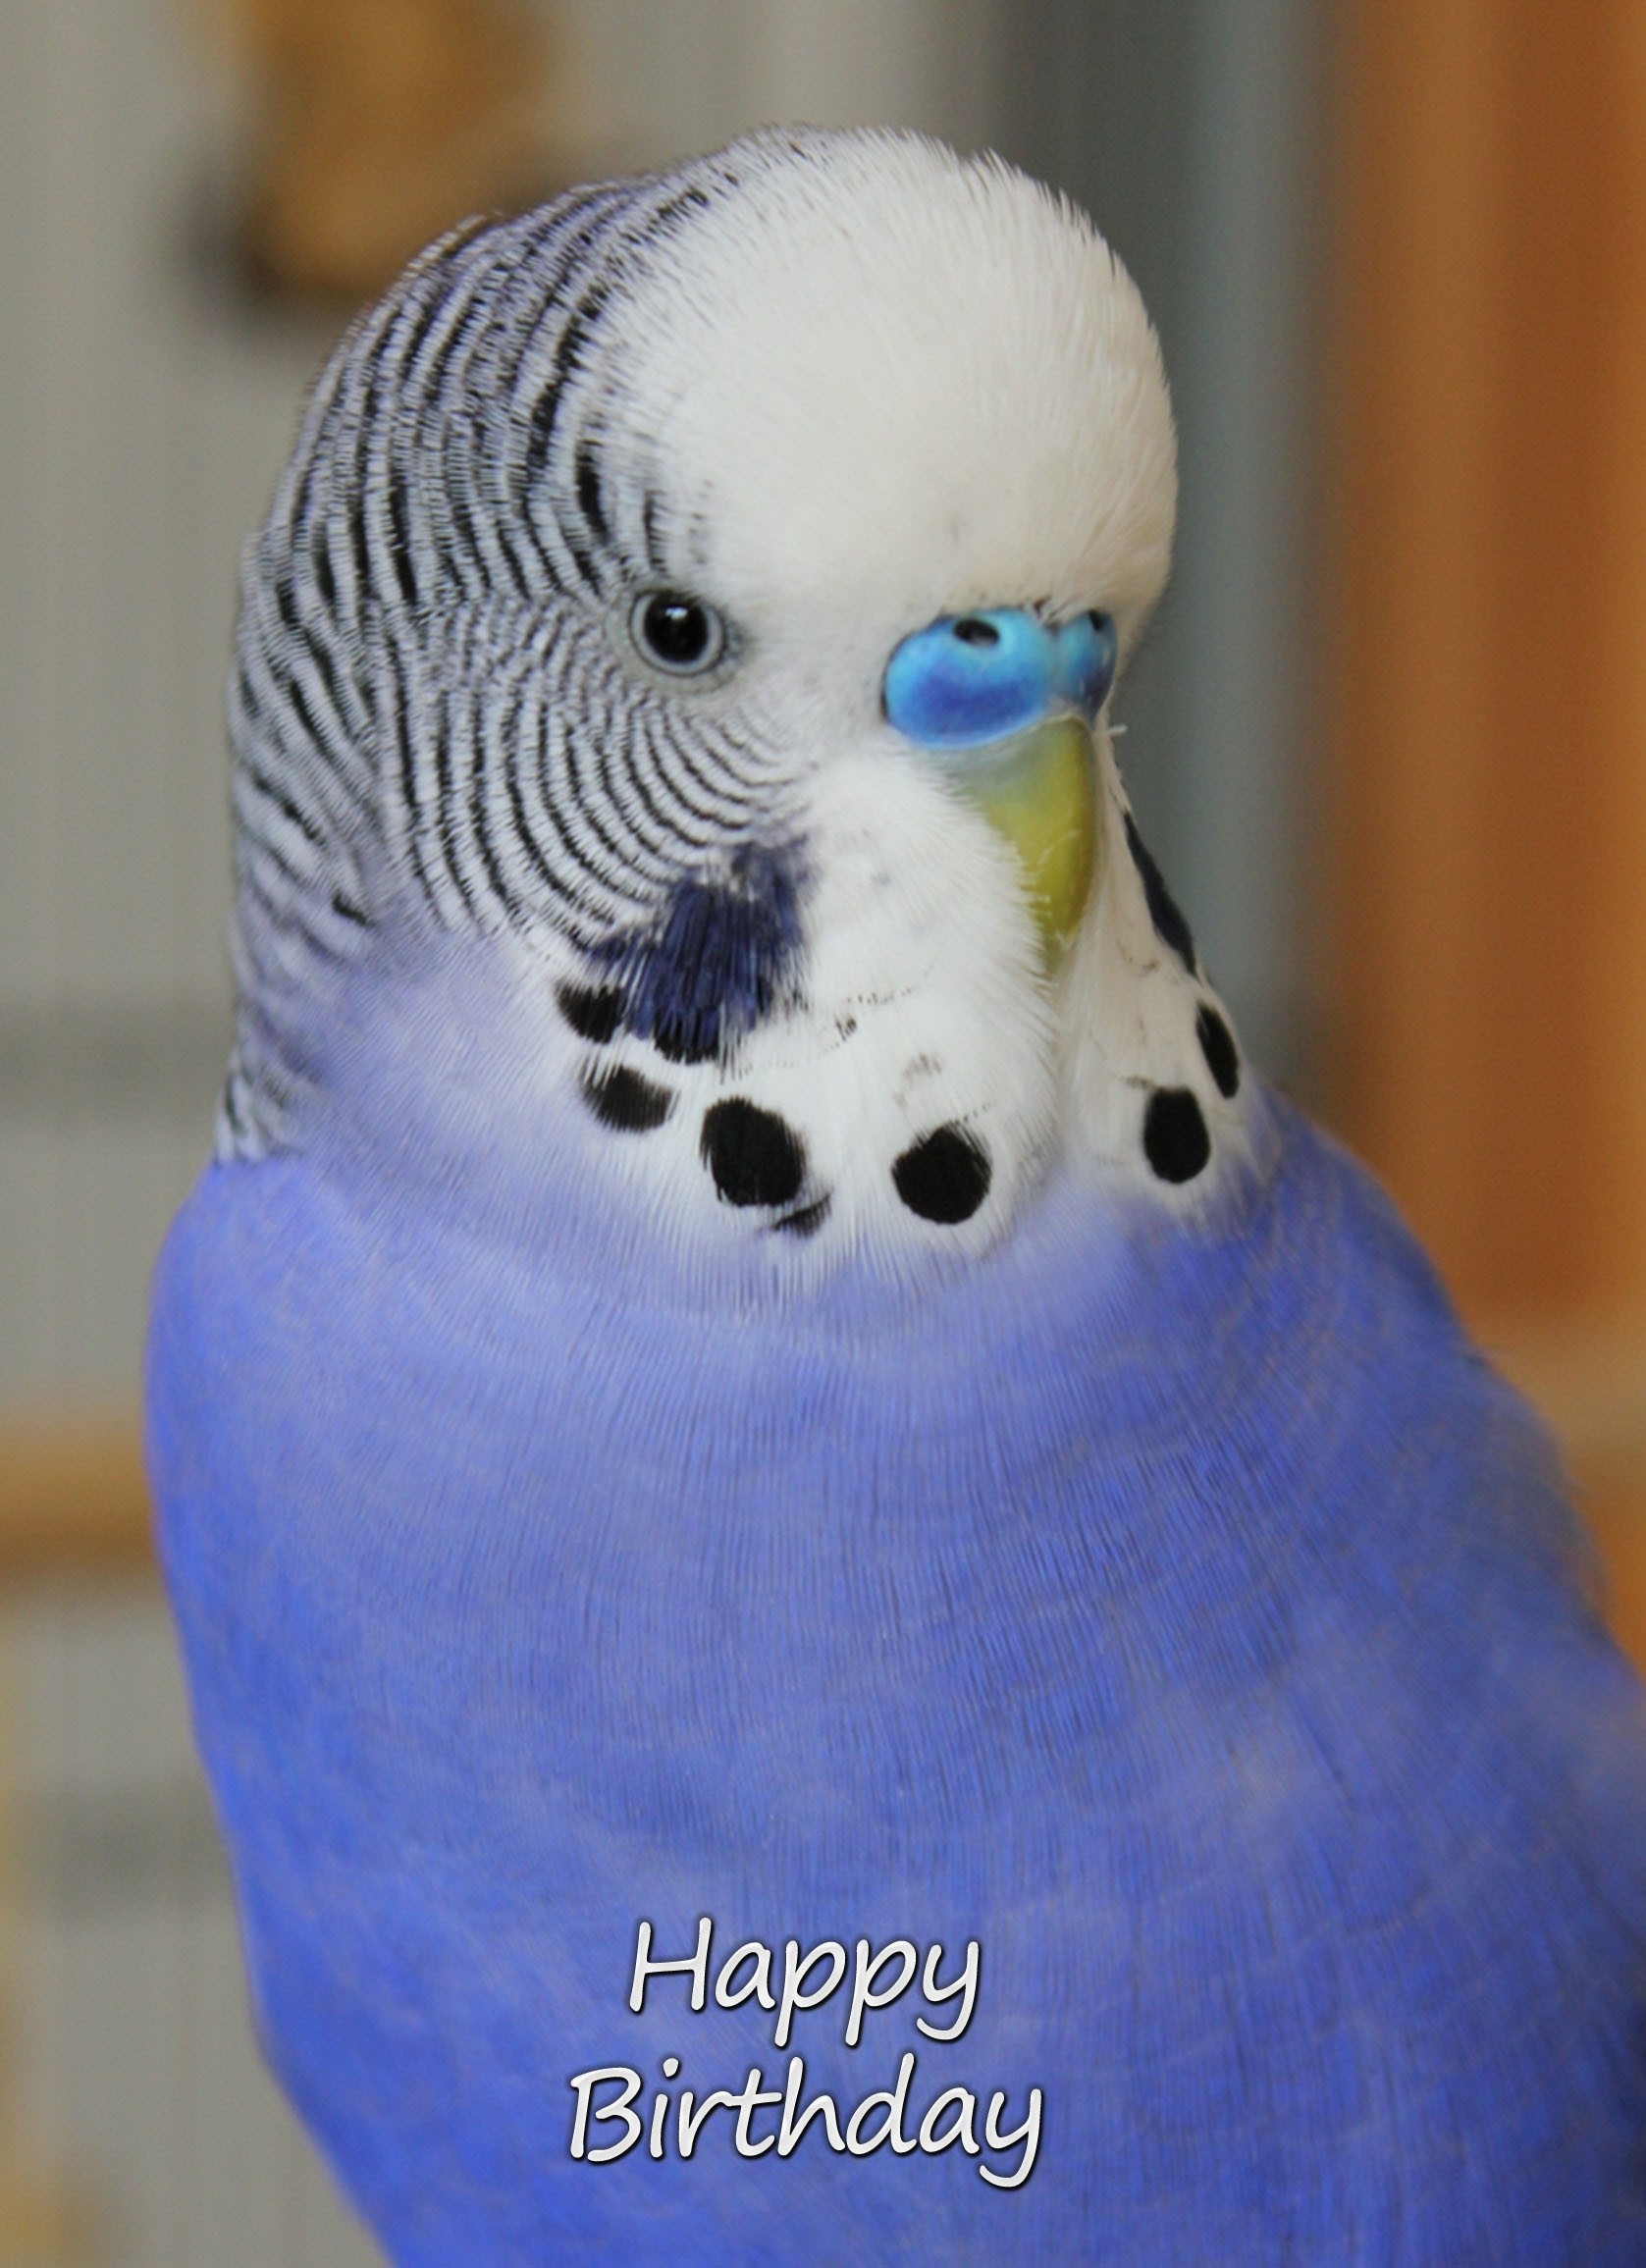 Budgie Bird Birthday Card